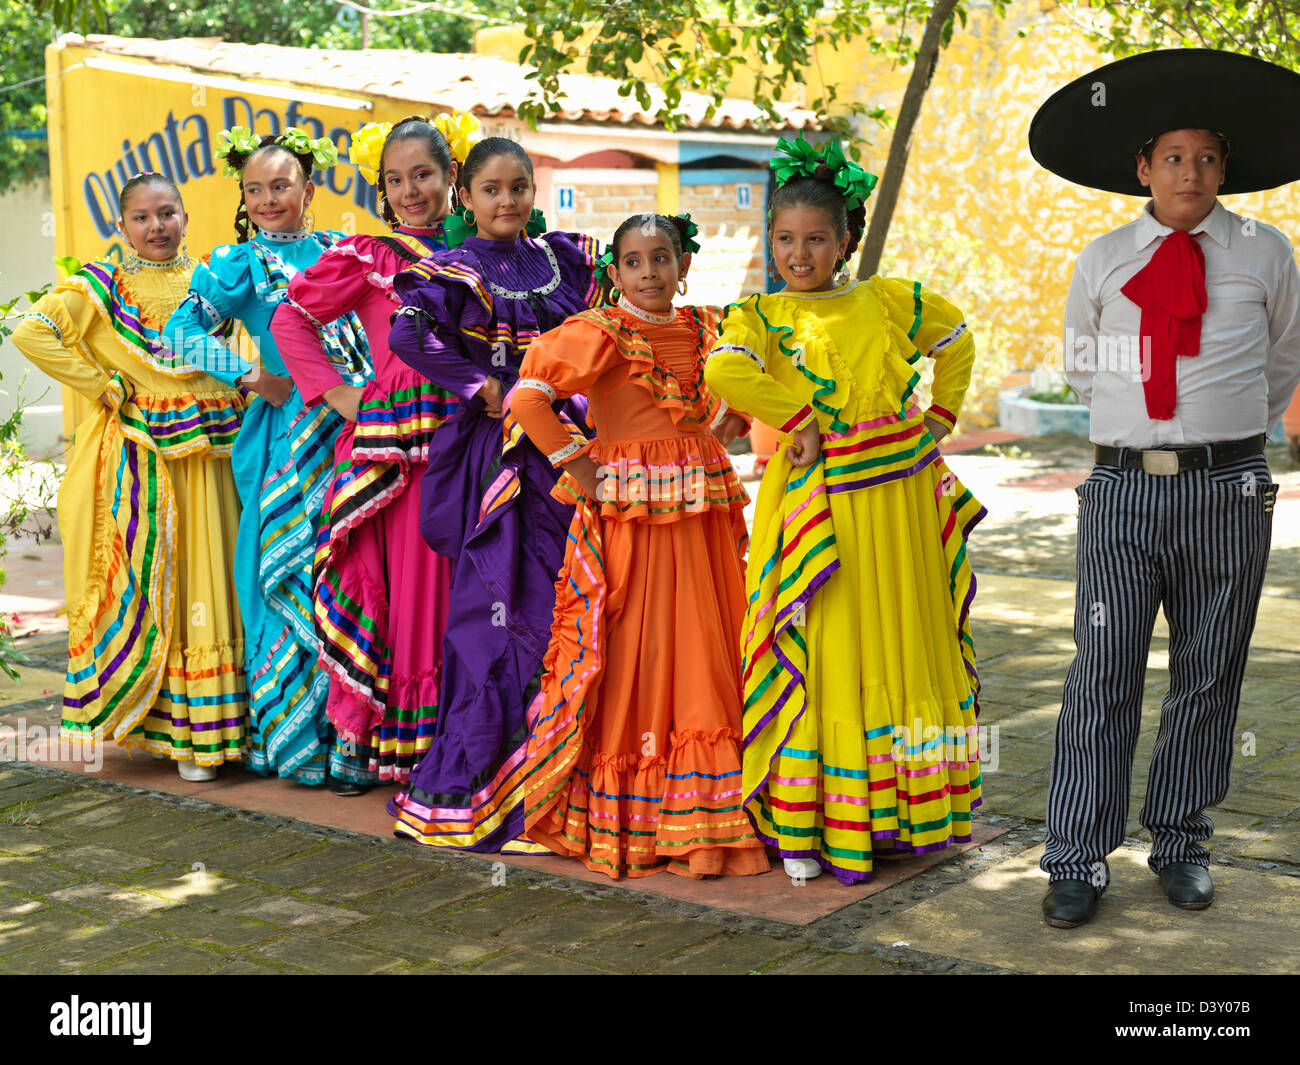 Messico, Jalisco, Tequila, ritratto di un gruppo di giovani danzatori messicani in costume folkloristico Foto Stock